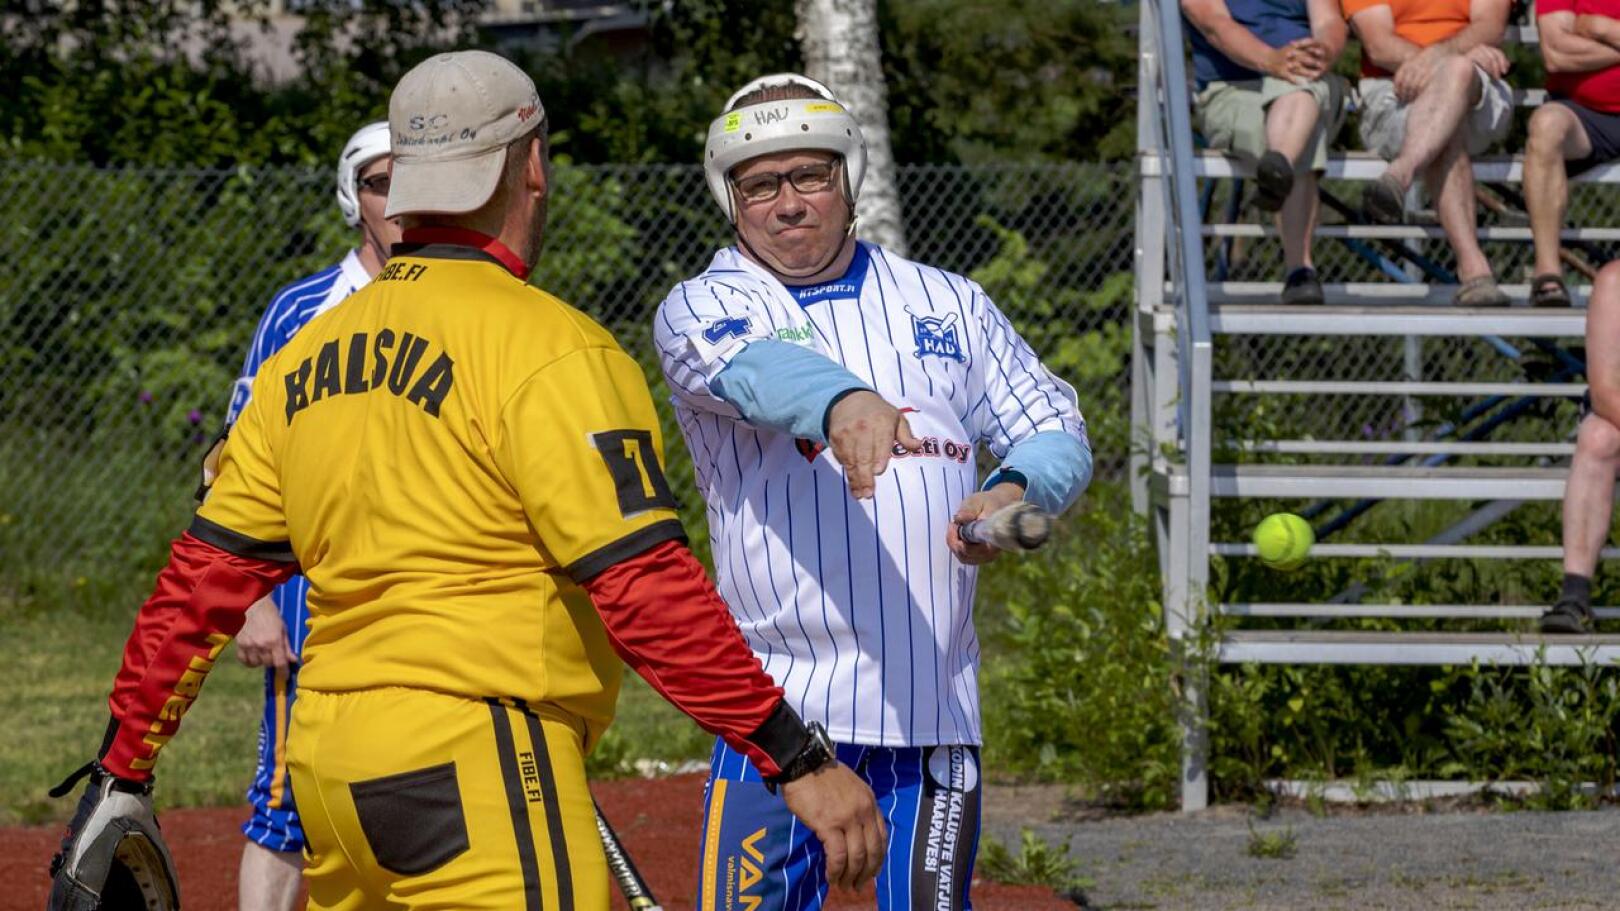 HaU-Pesiksen Juha Hatula aloitti pesäpallouransa vuonna 1979. Seurauskollinen Hatula on siis nähty kuudella eri vuosikymmenellä Haapaveden Urheilijoiden väreissä pesäpallokentällä.